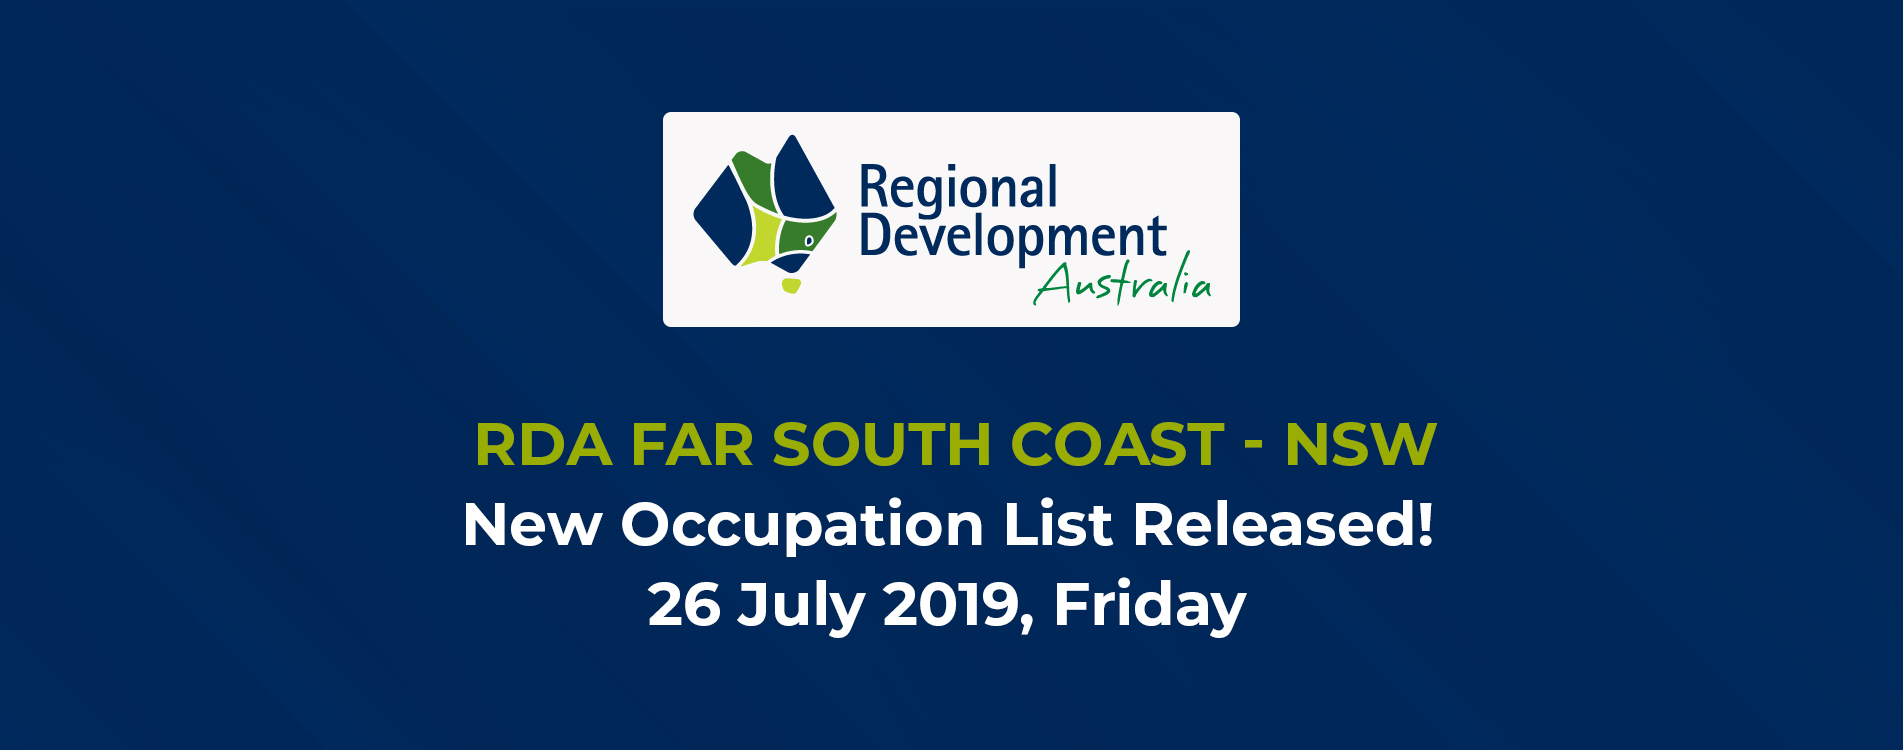 RDA Far South Coast NSW New Occupation List Released